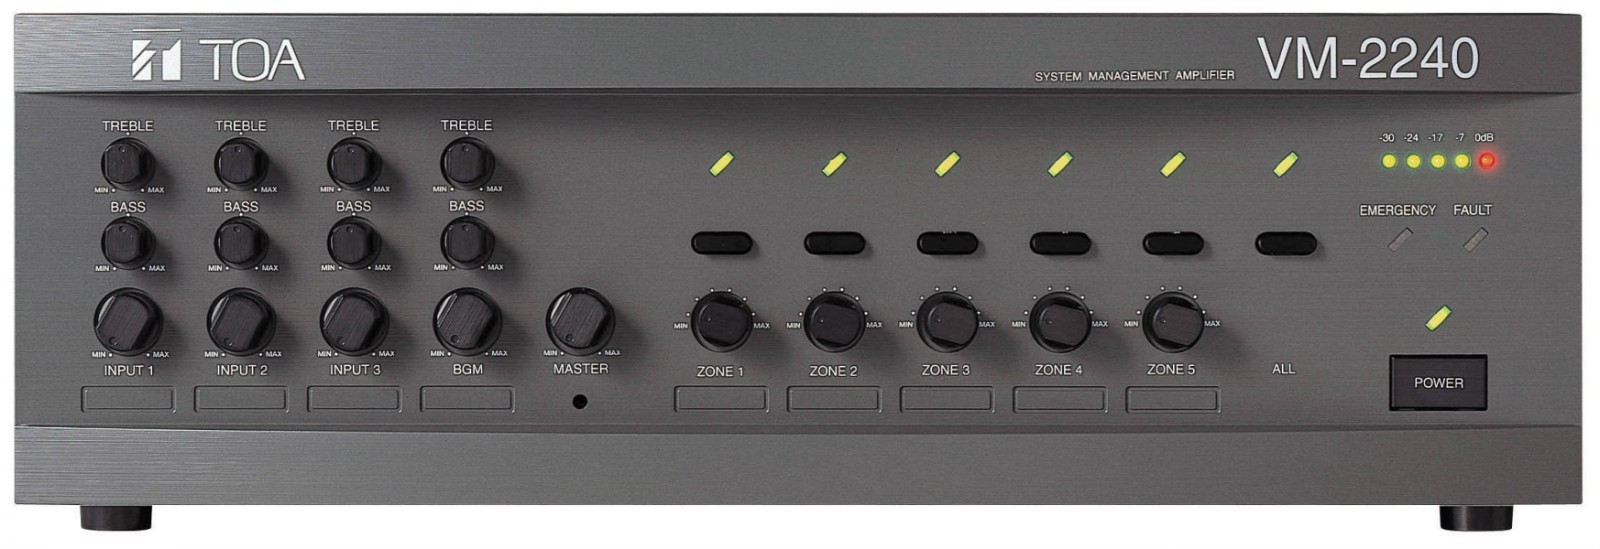 VM-2240 ER.TOA System Management Amplifier